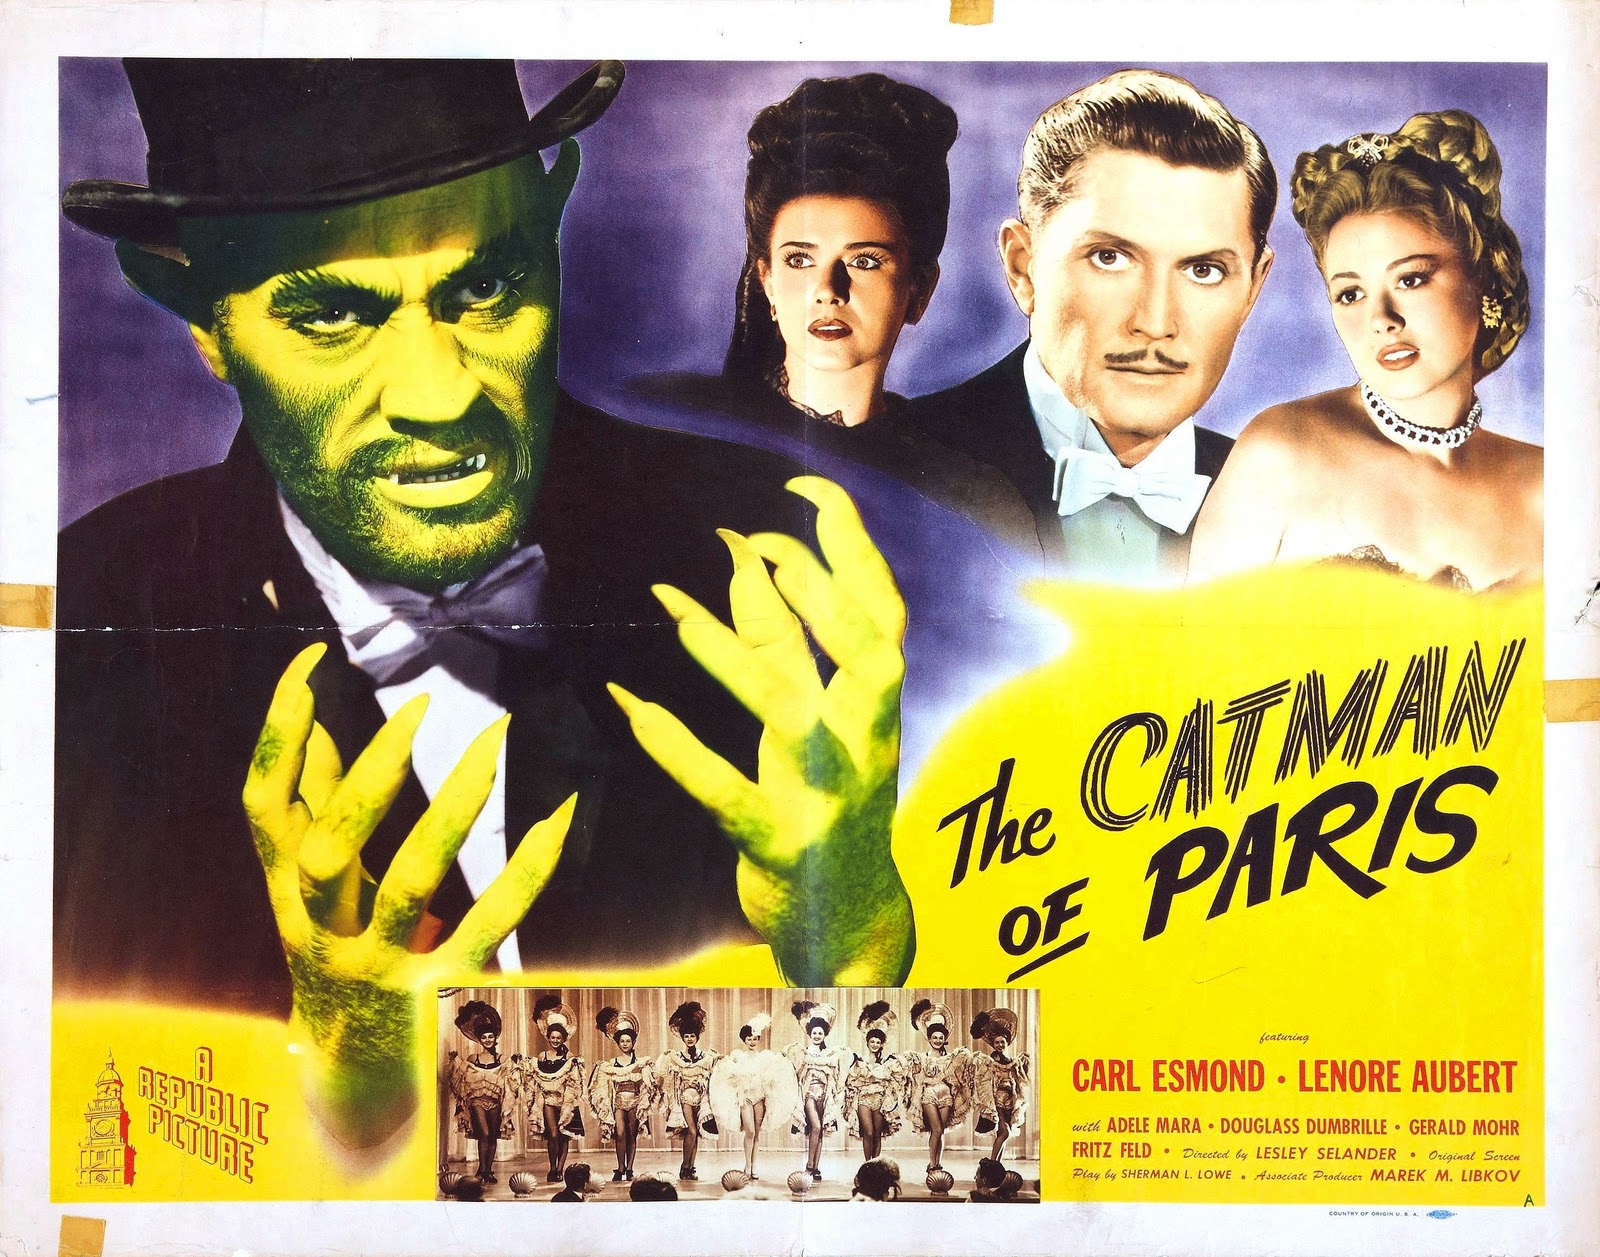 The Catman Of Paris [1946]